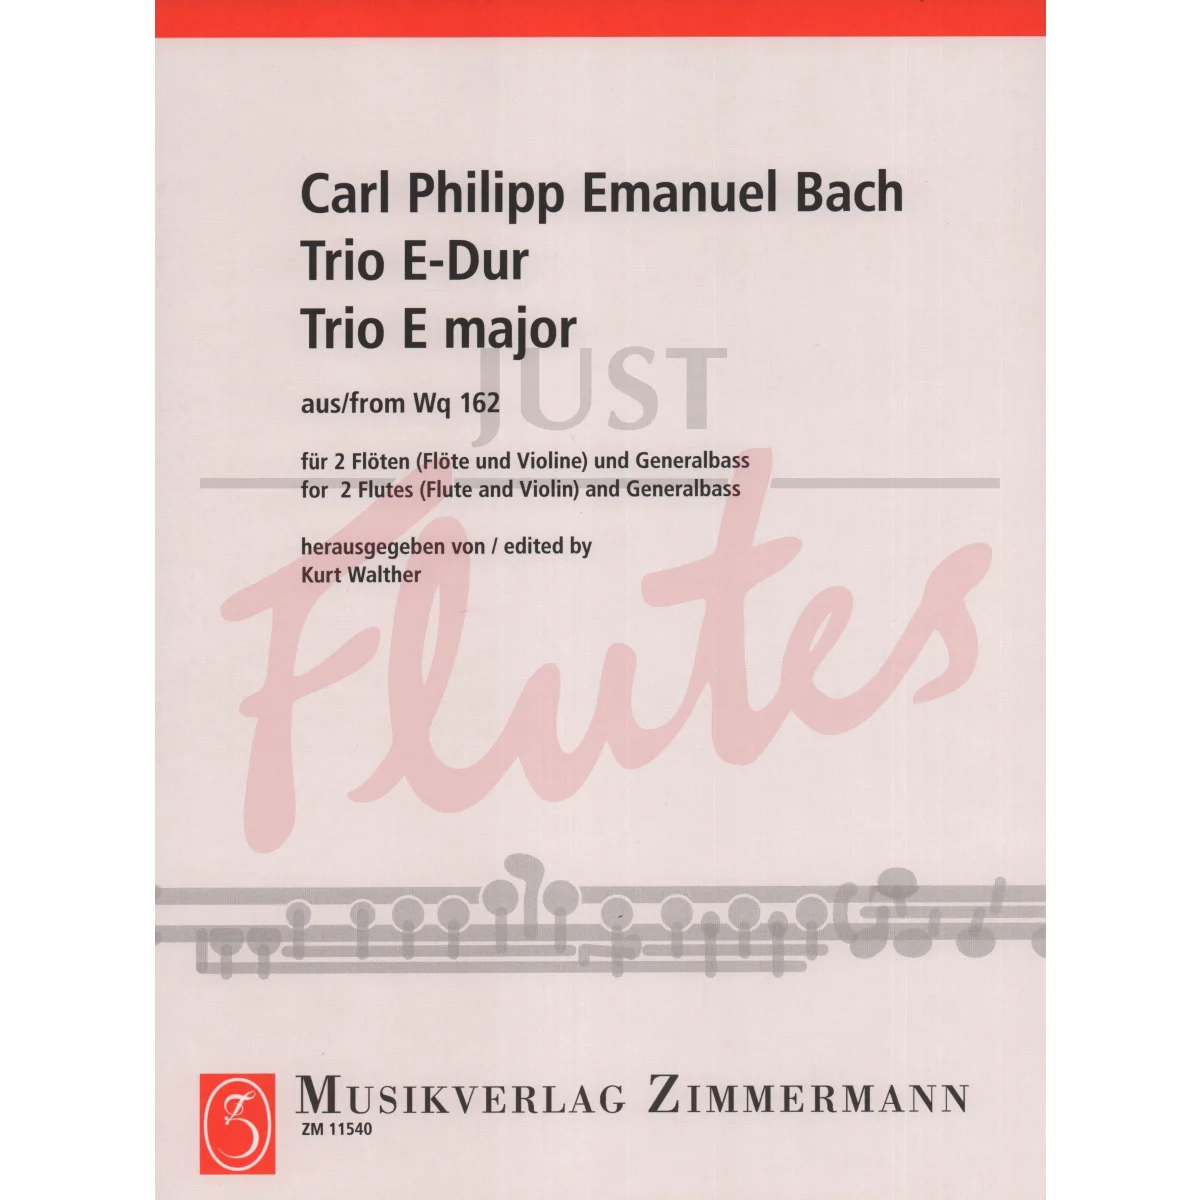 Trio Sonata in E major for Two Flutes and Continuo